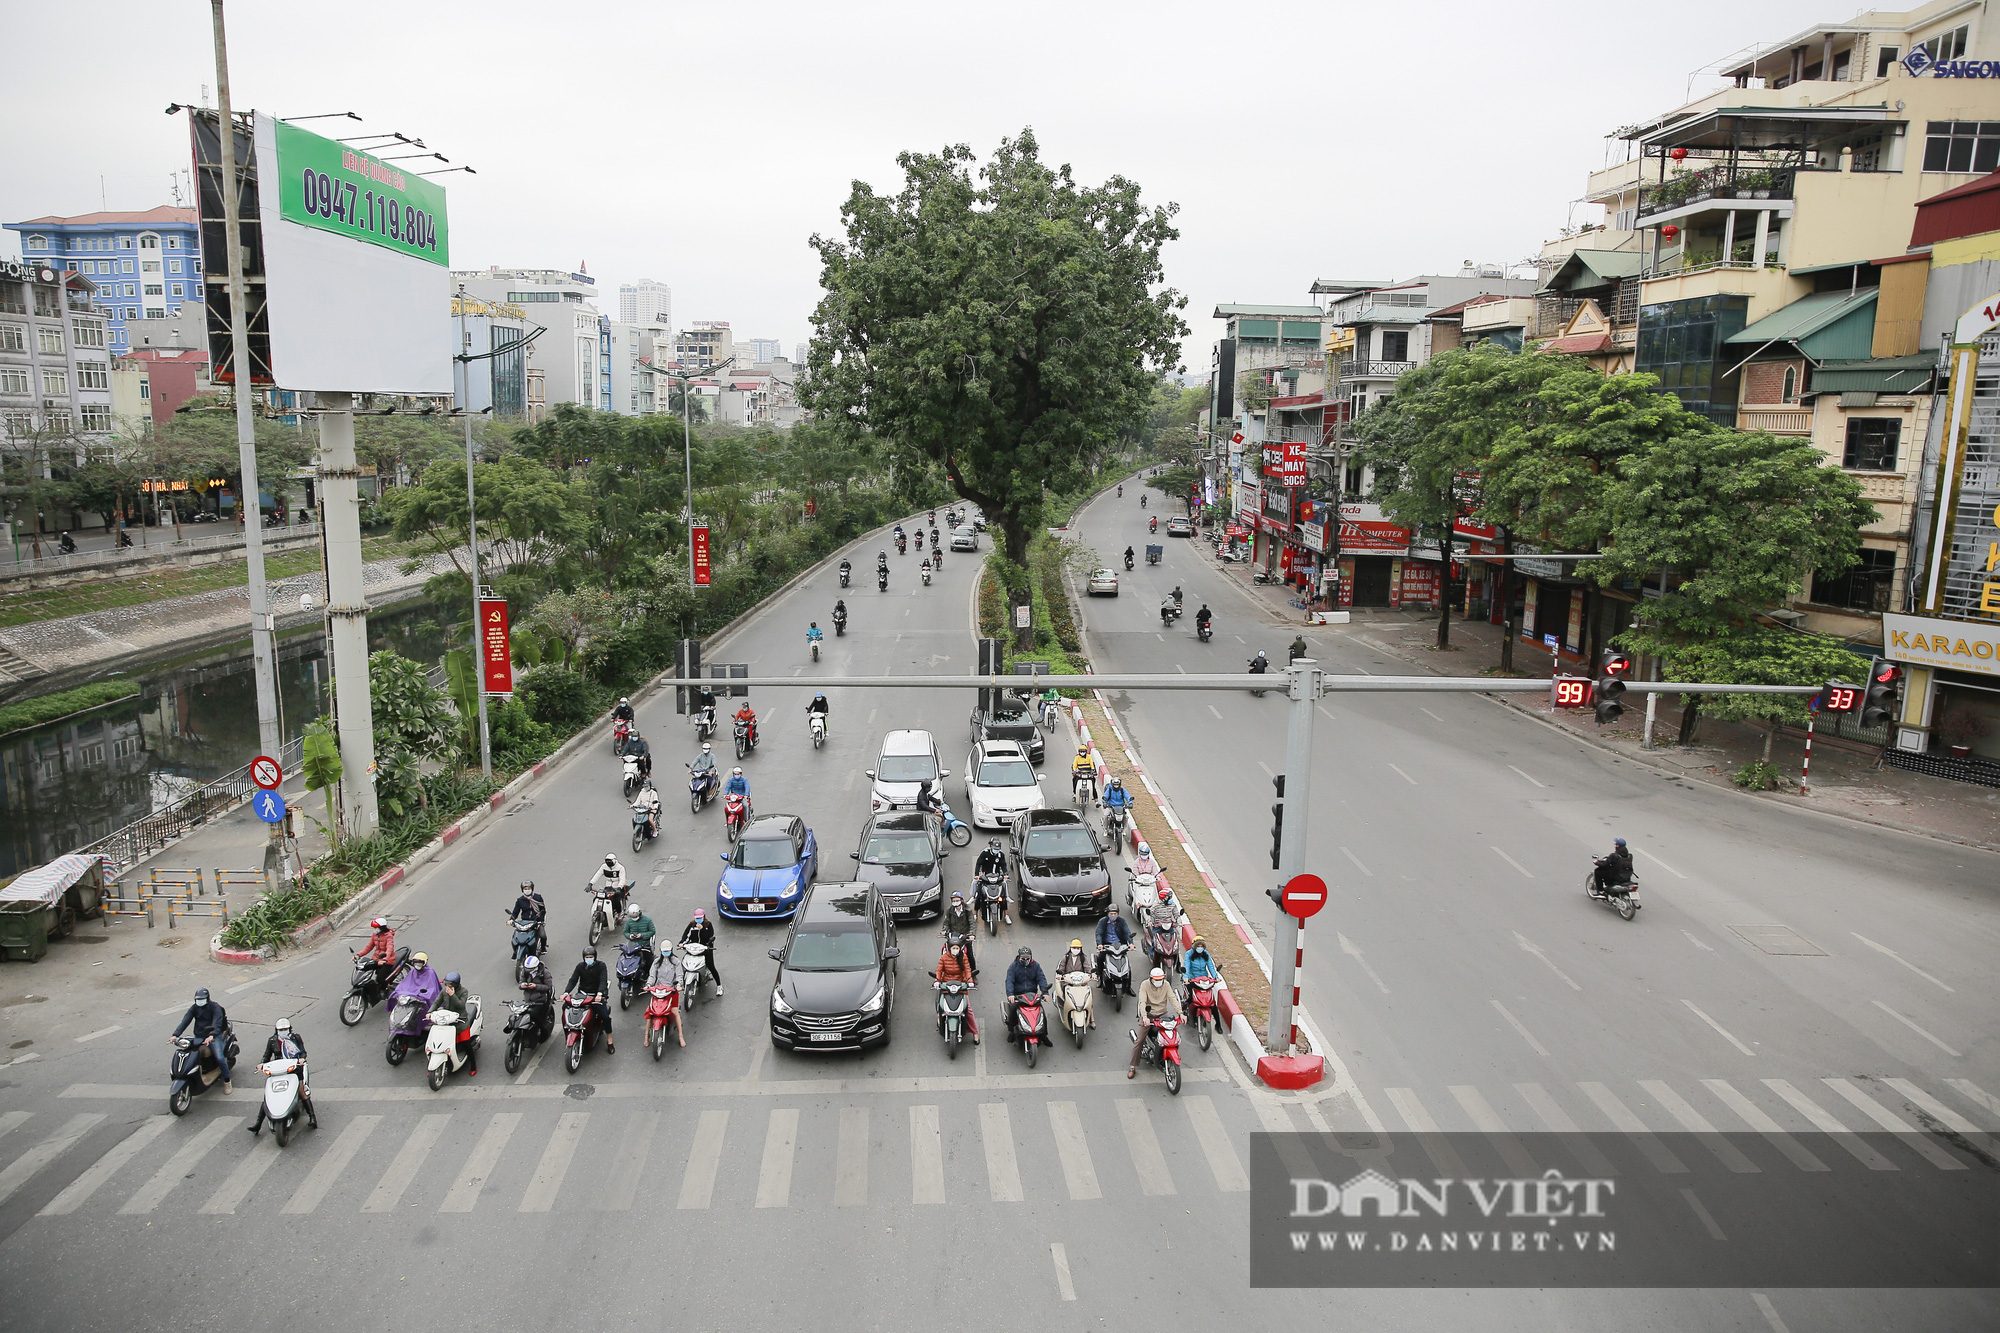 Bất ngờ giao thông Hà Nội trong ngày đầu tiên đi làm sau kỳ nghỉ Tết Nguyên đán - Ảnh 1.